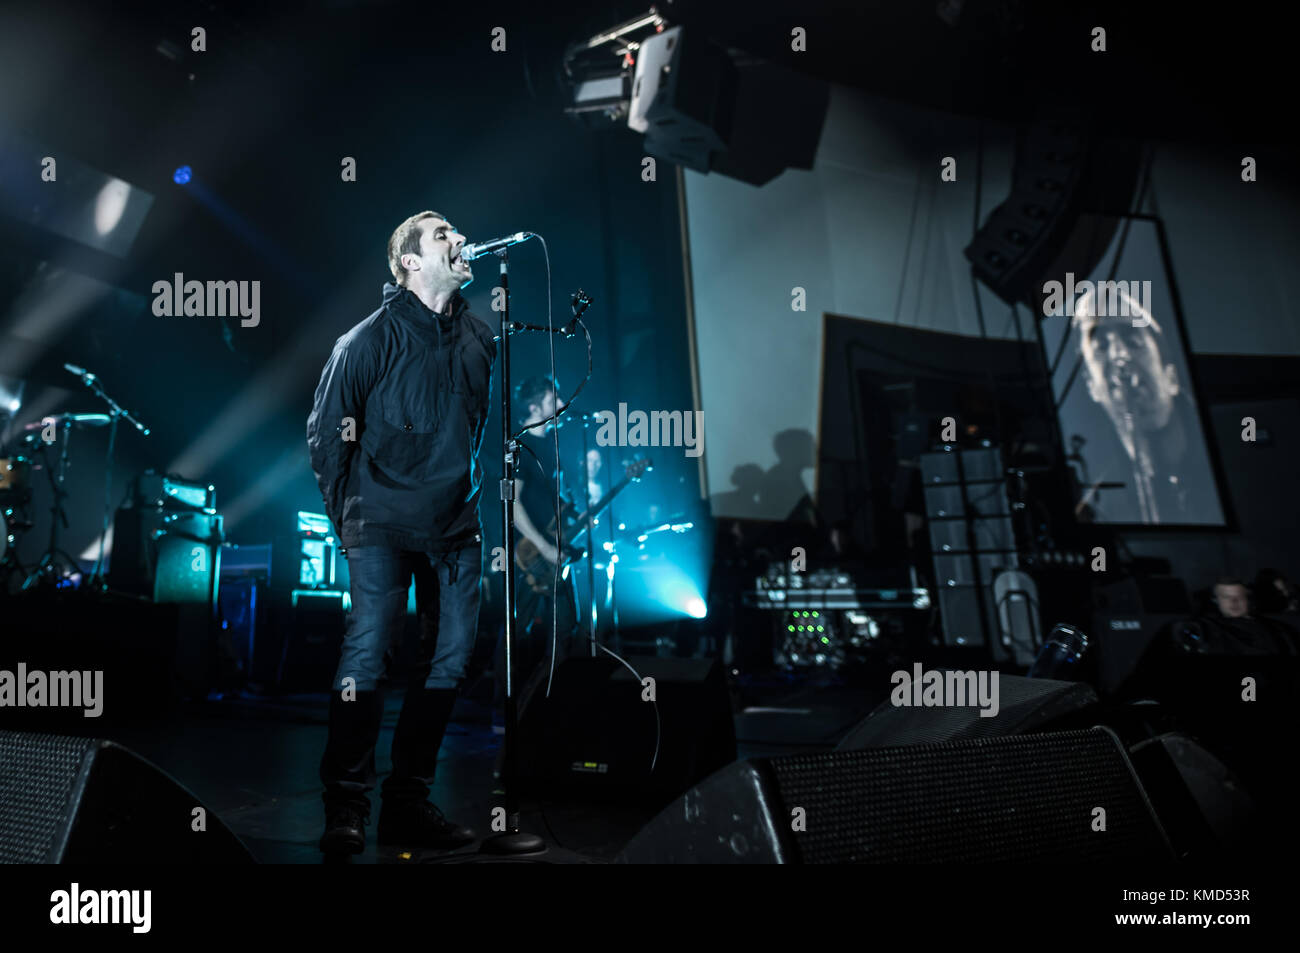 Plymouth, Regno Unito. 6 dicembre, 2017. Liam Gallagher eseguendo a Plymouth pavilions sul suo come lei sono stati tour. Credito: Steve lewington/ alamy live news Foto Stock